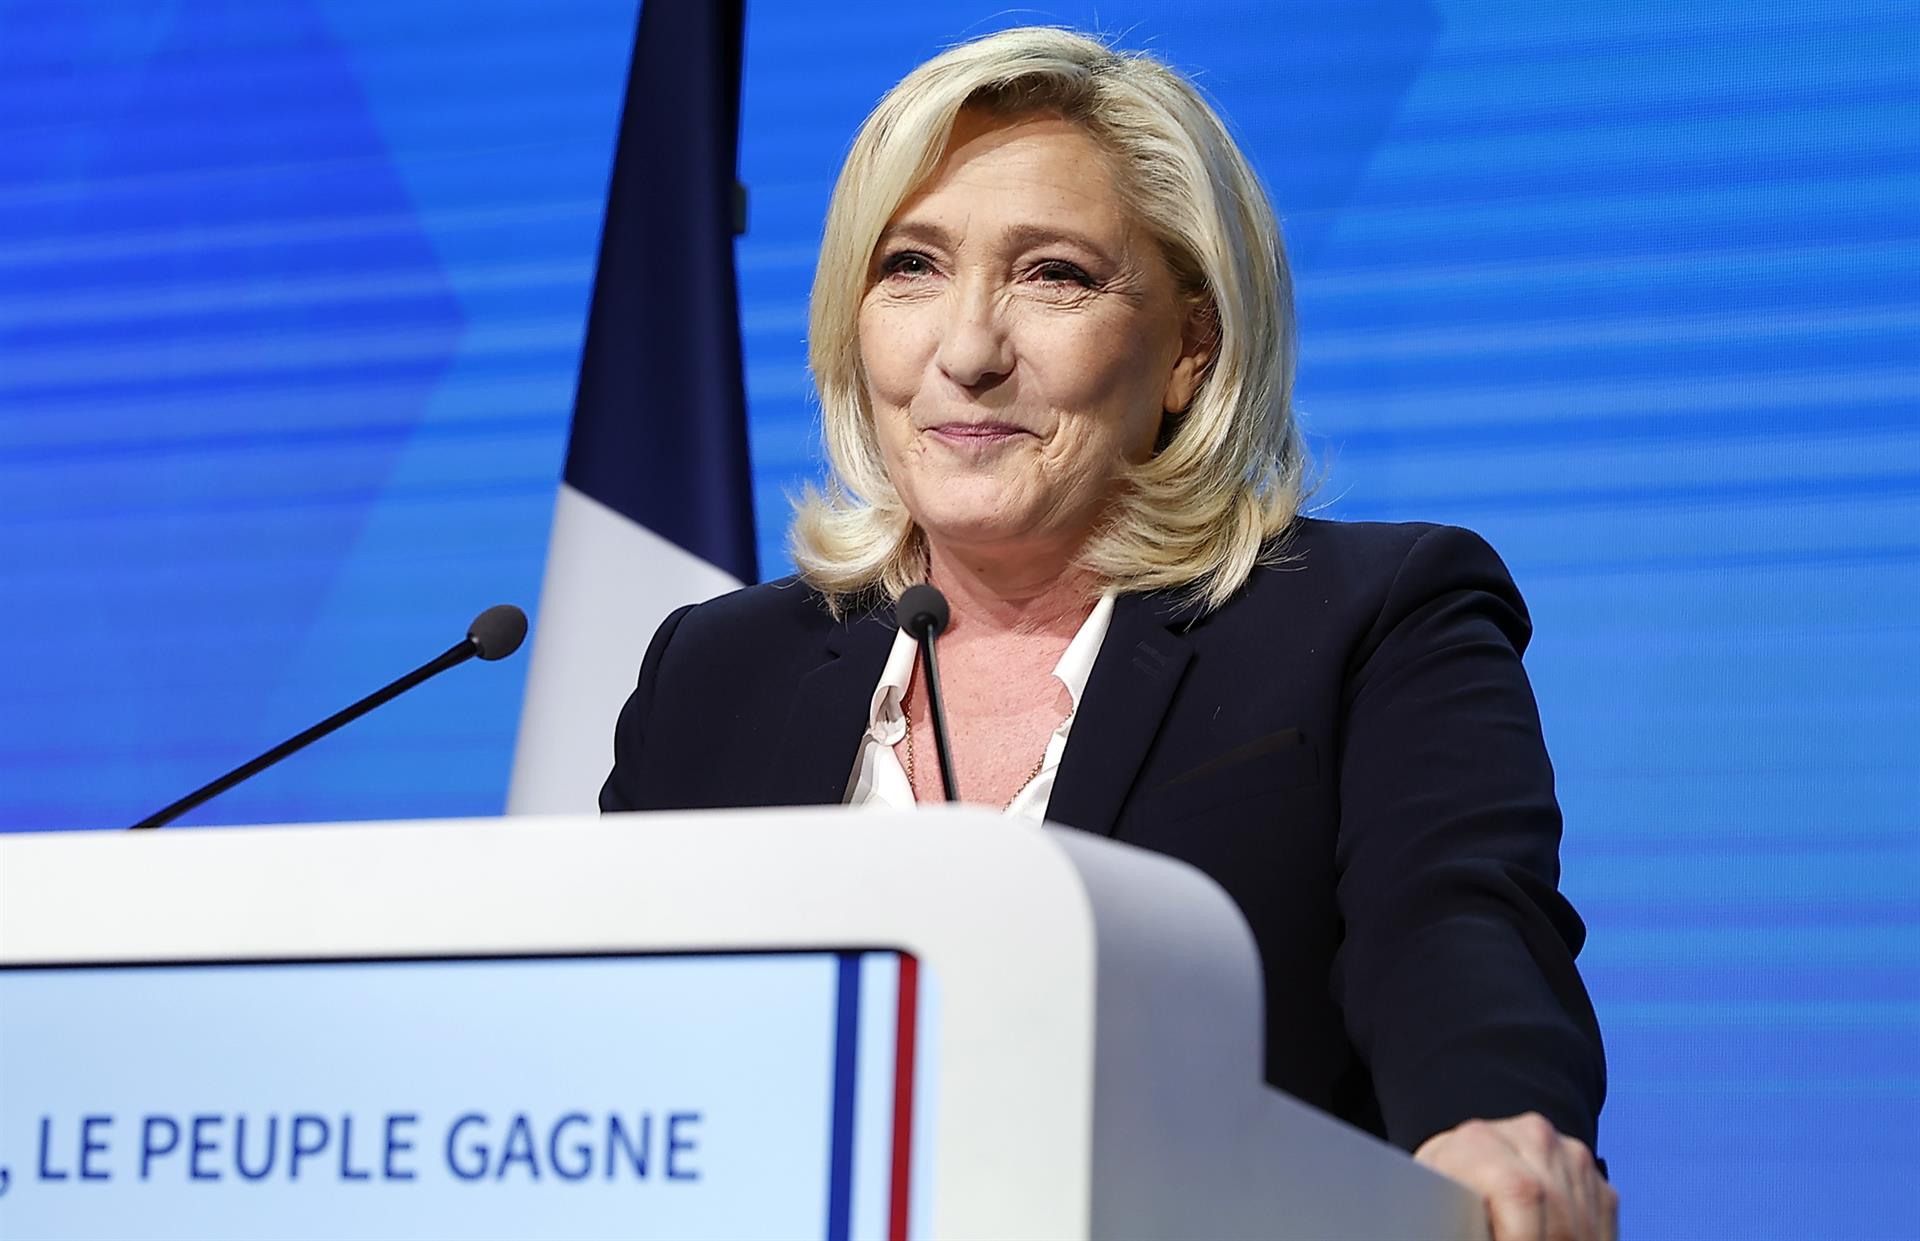 Le Pen reconoce la derrota, pero denuncia “métodos desleales”